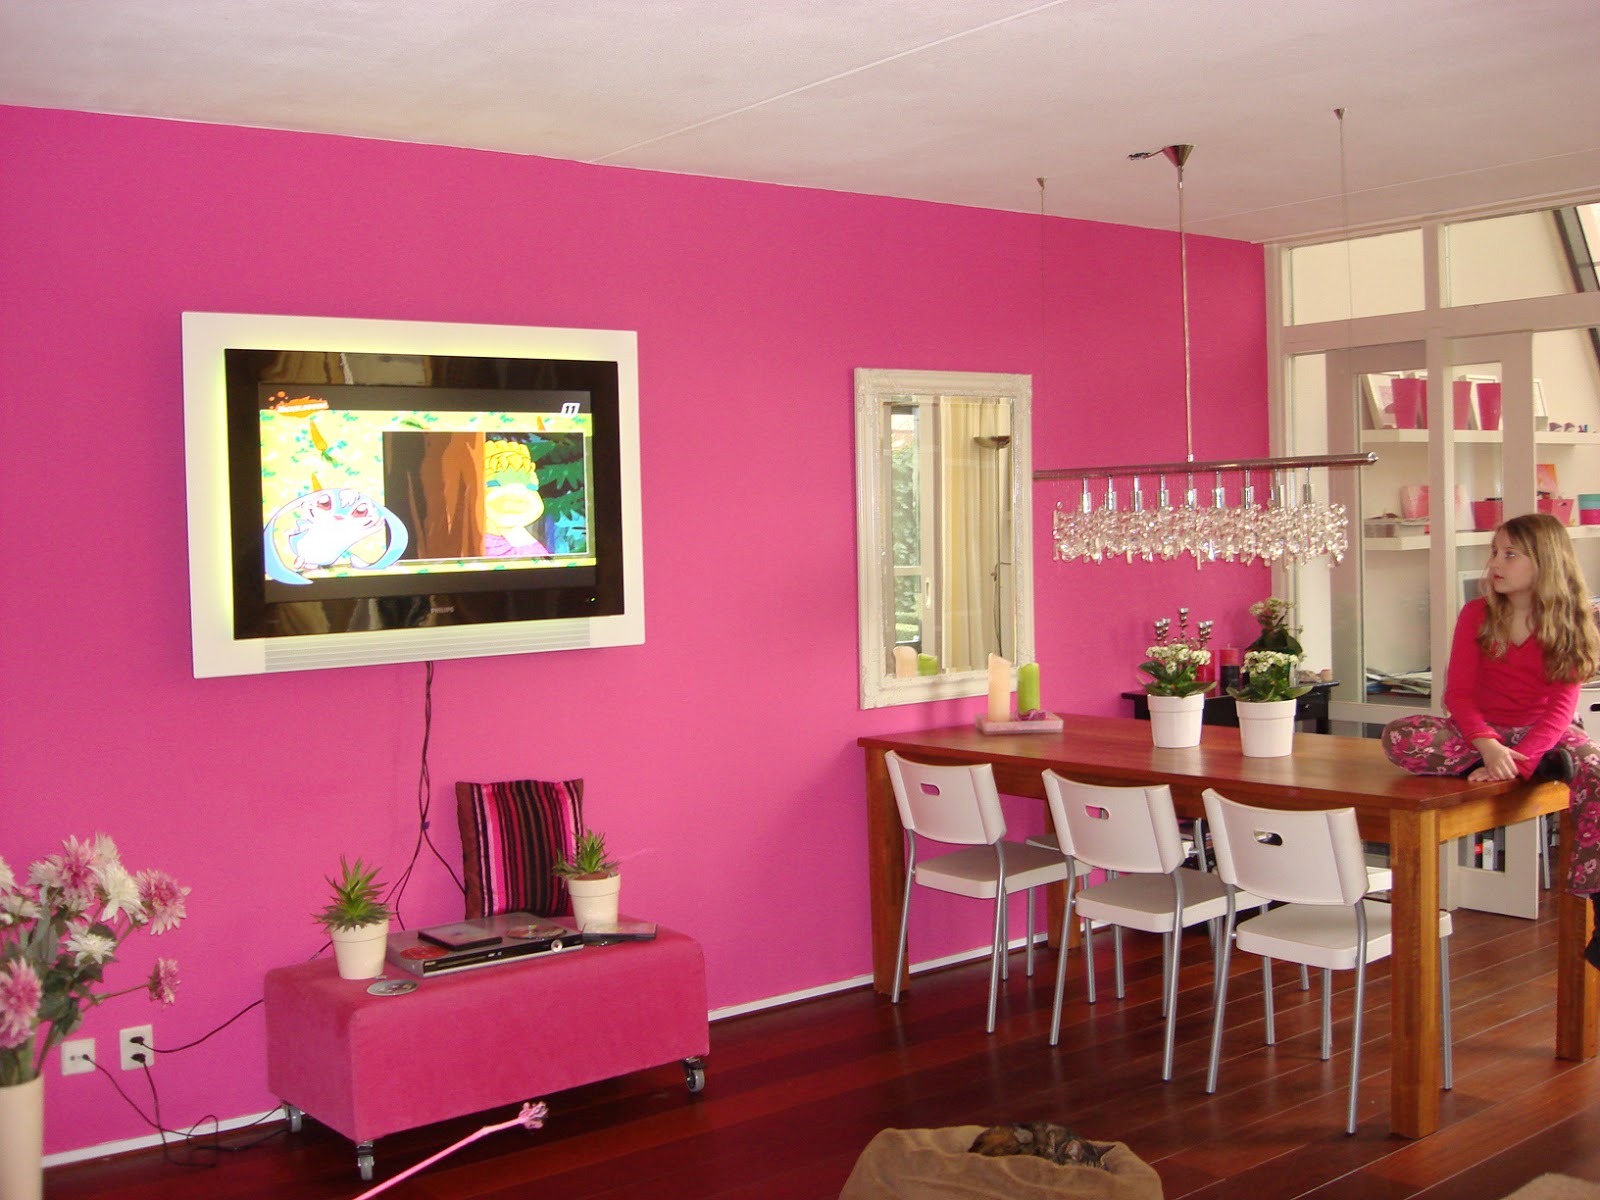  Warna  Cat  Pink  Dulux Joy Studio Design Gallery Best Design